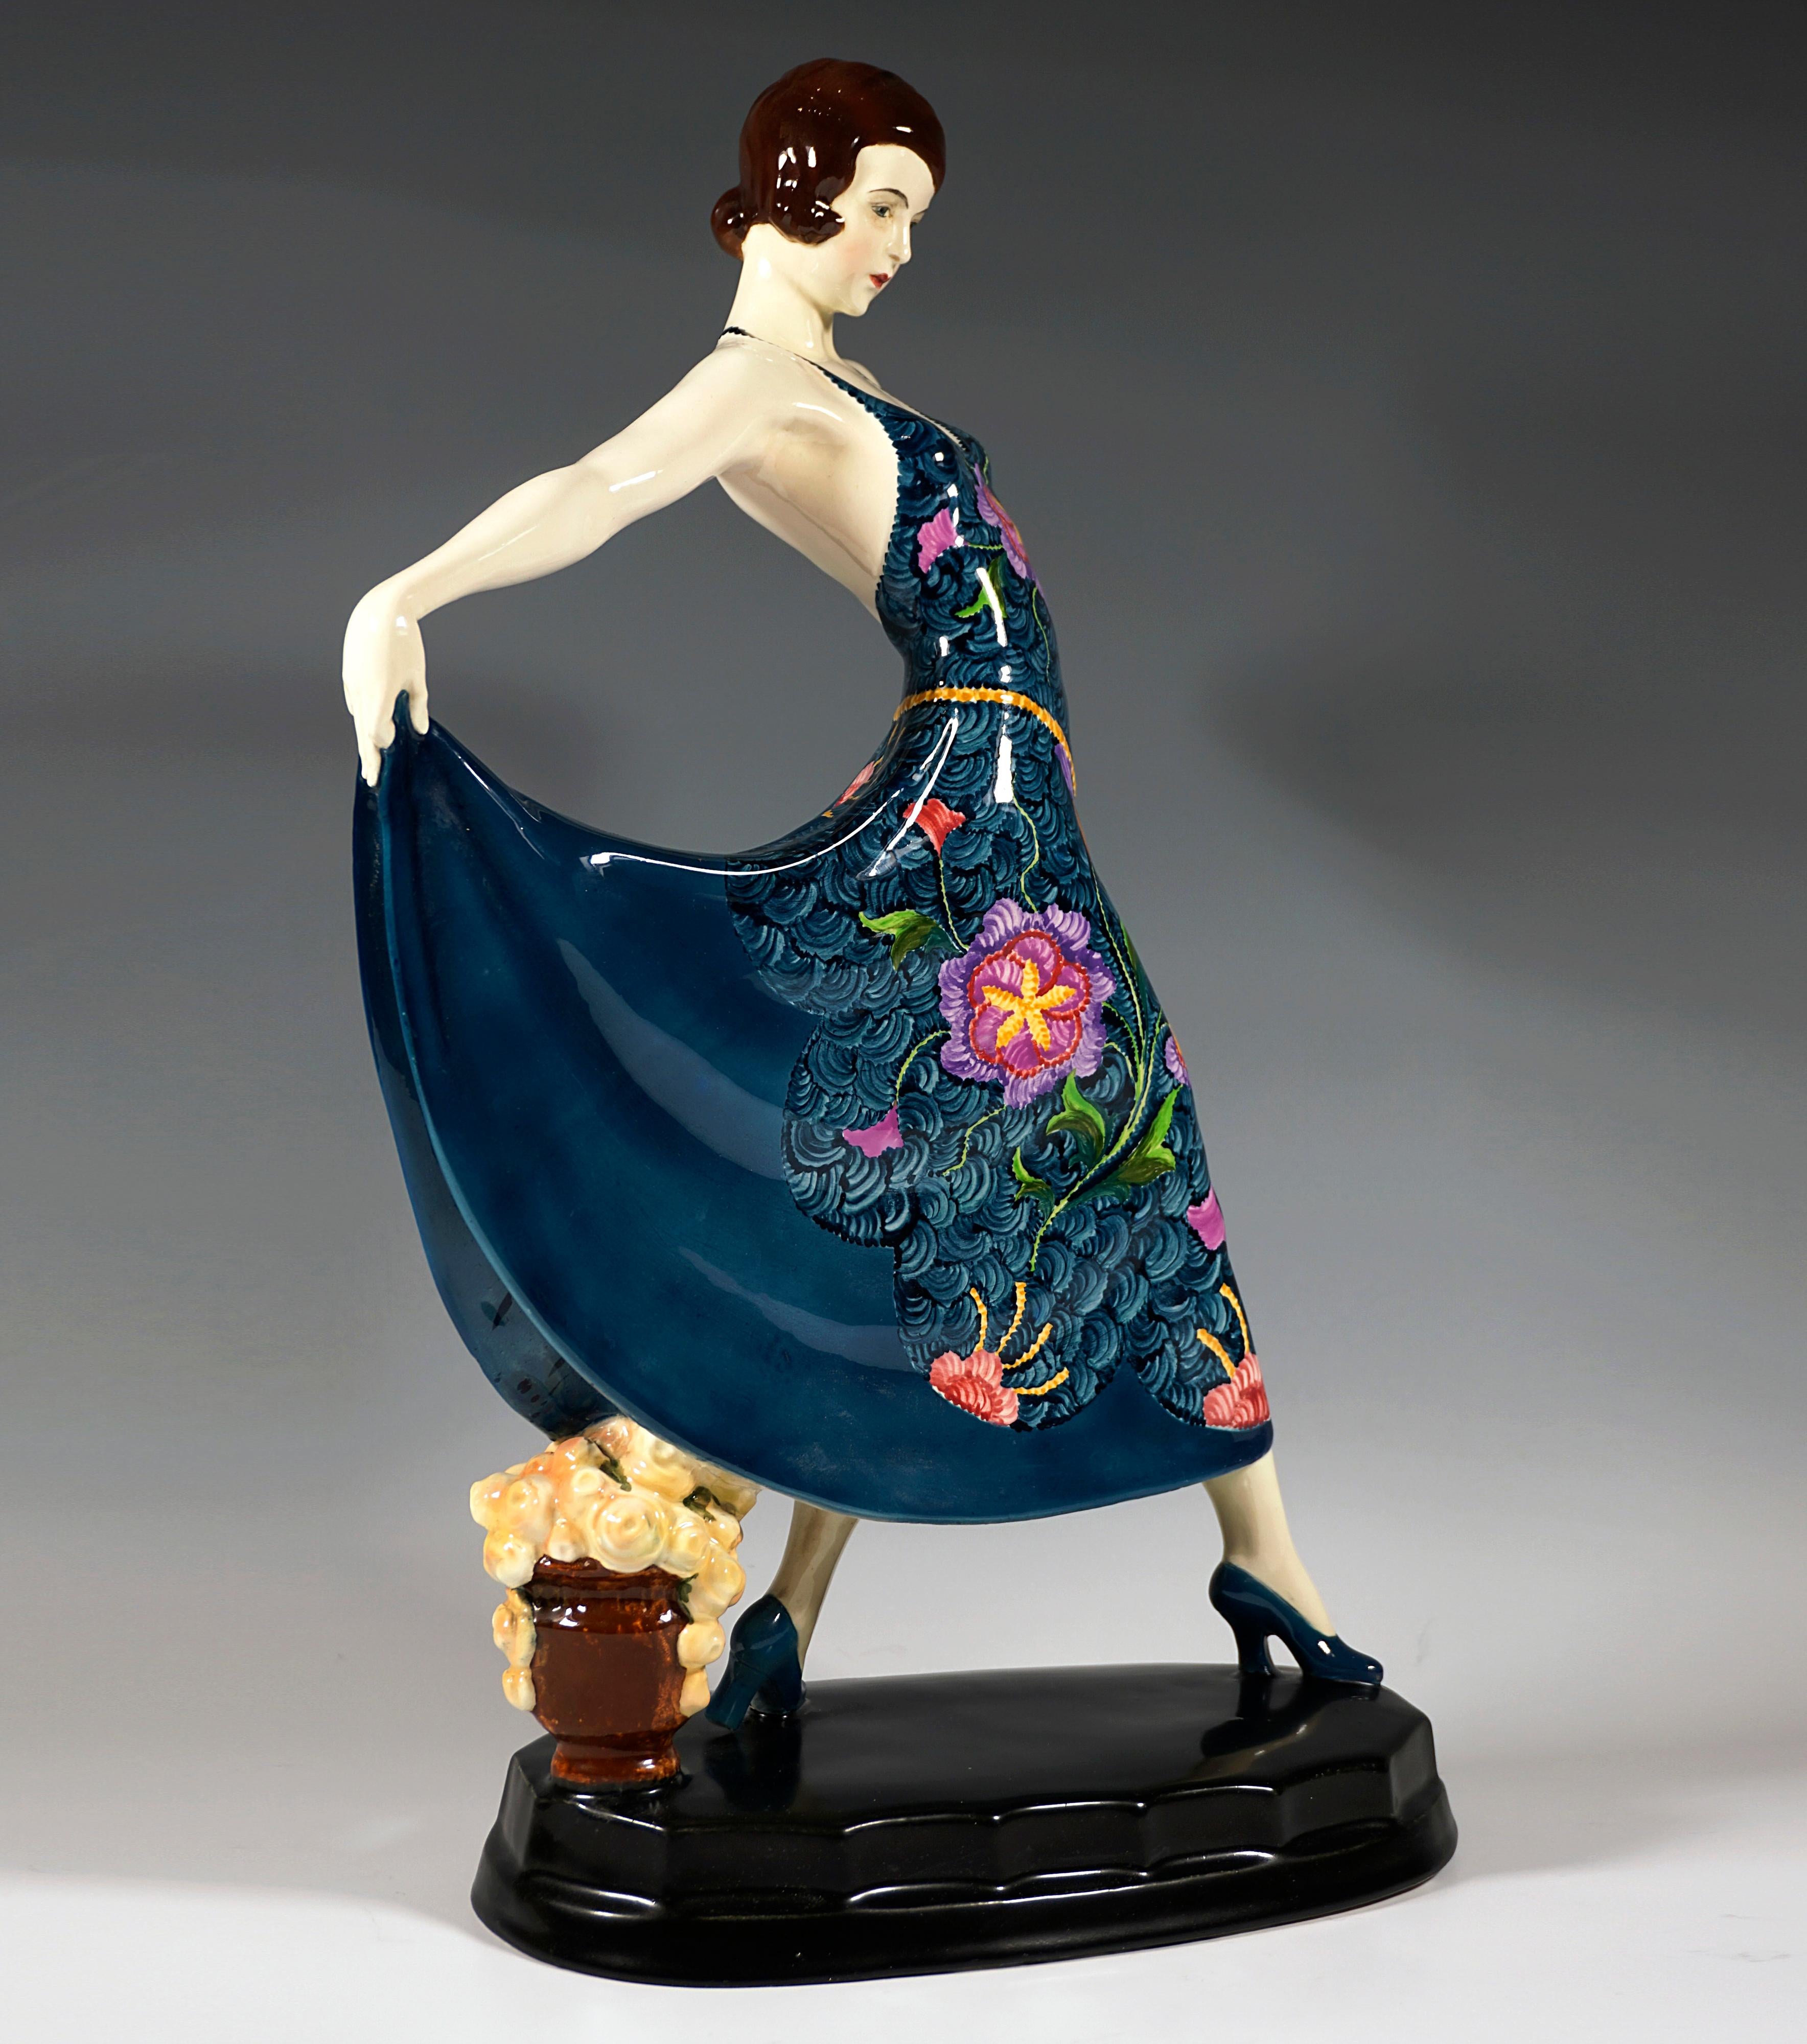 Rare figurine en céramique d'art Goldscheider des années 1920 :
Représentation de l'actrice et danseuse Lilian Harvey portant une perruque sombre et marchant dans une longue robe décolletée dans le dos, décorée d'un motif floral élaboré, tenant sa